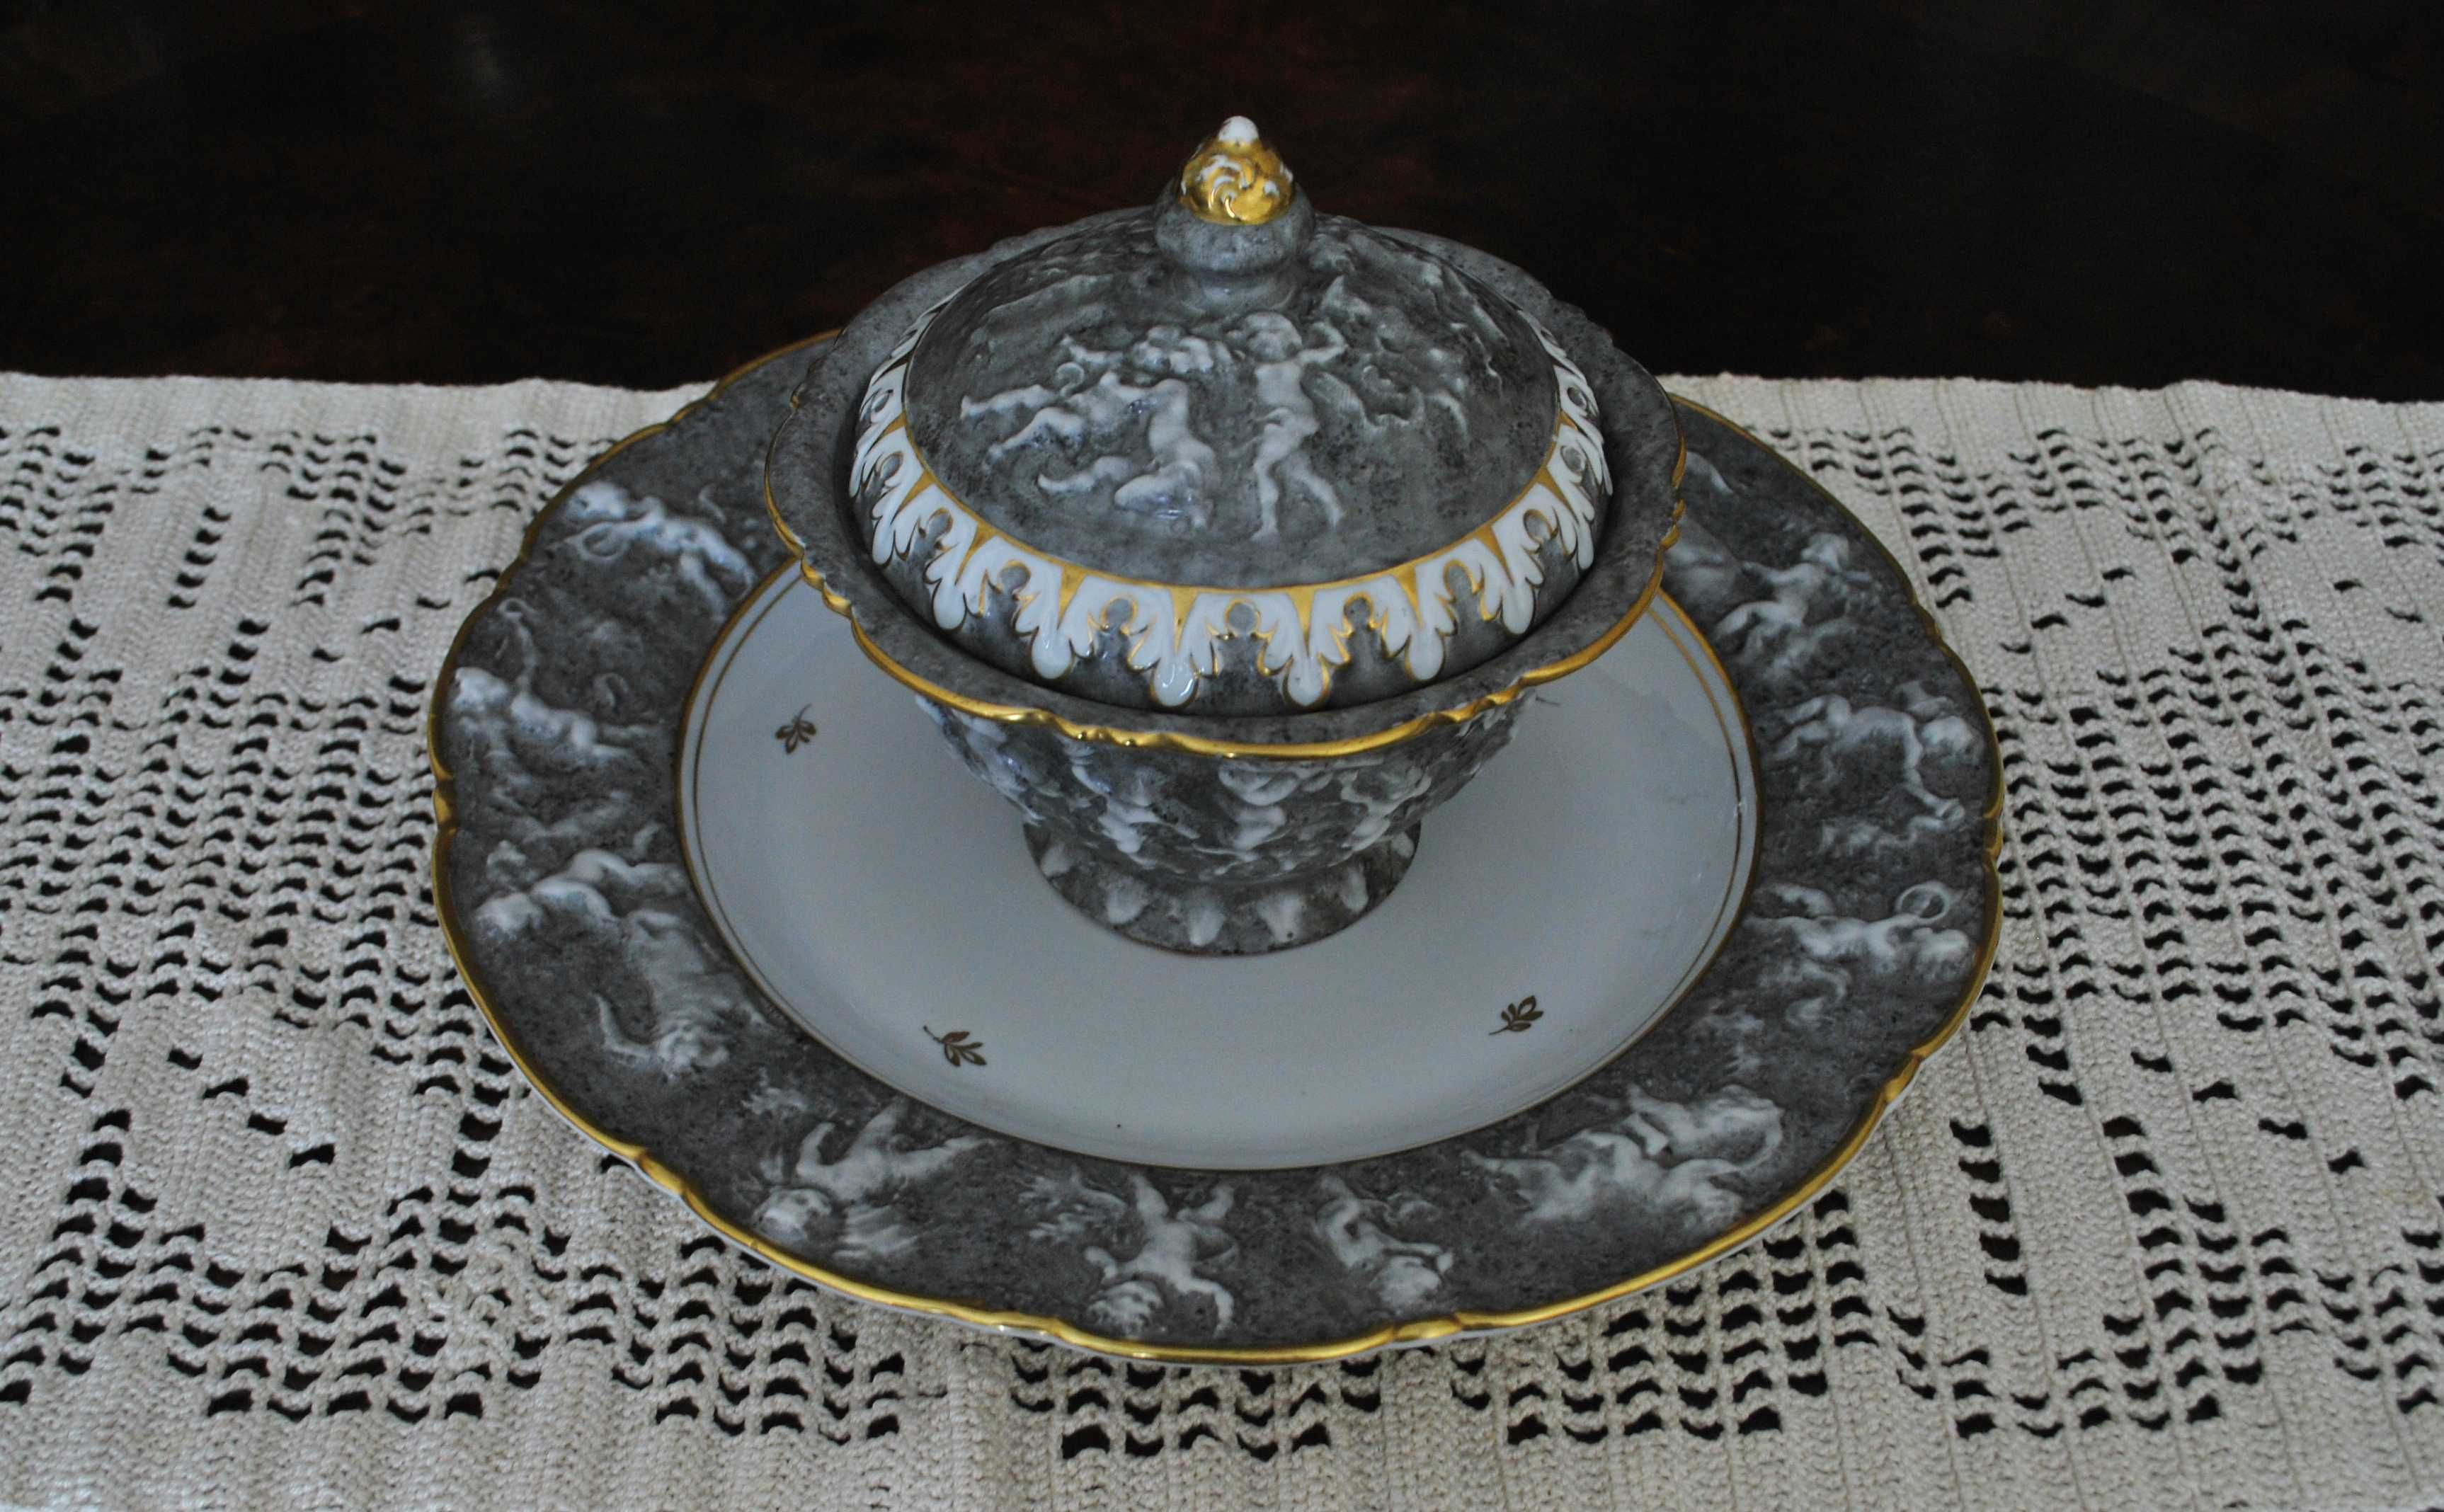 Centro de mesa – Prato e Bomboneira – Porcelana N coroado